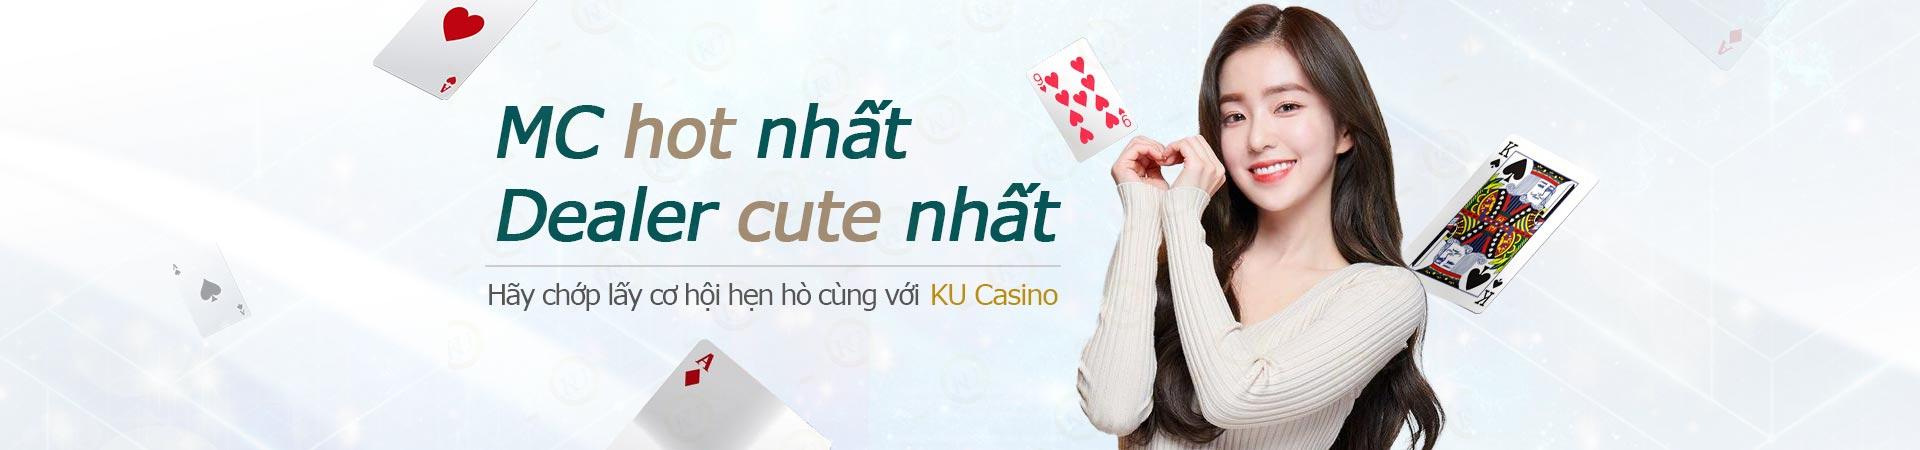 MC KU Casino